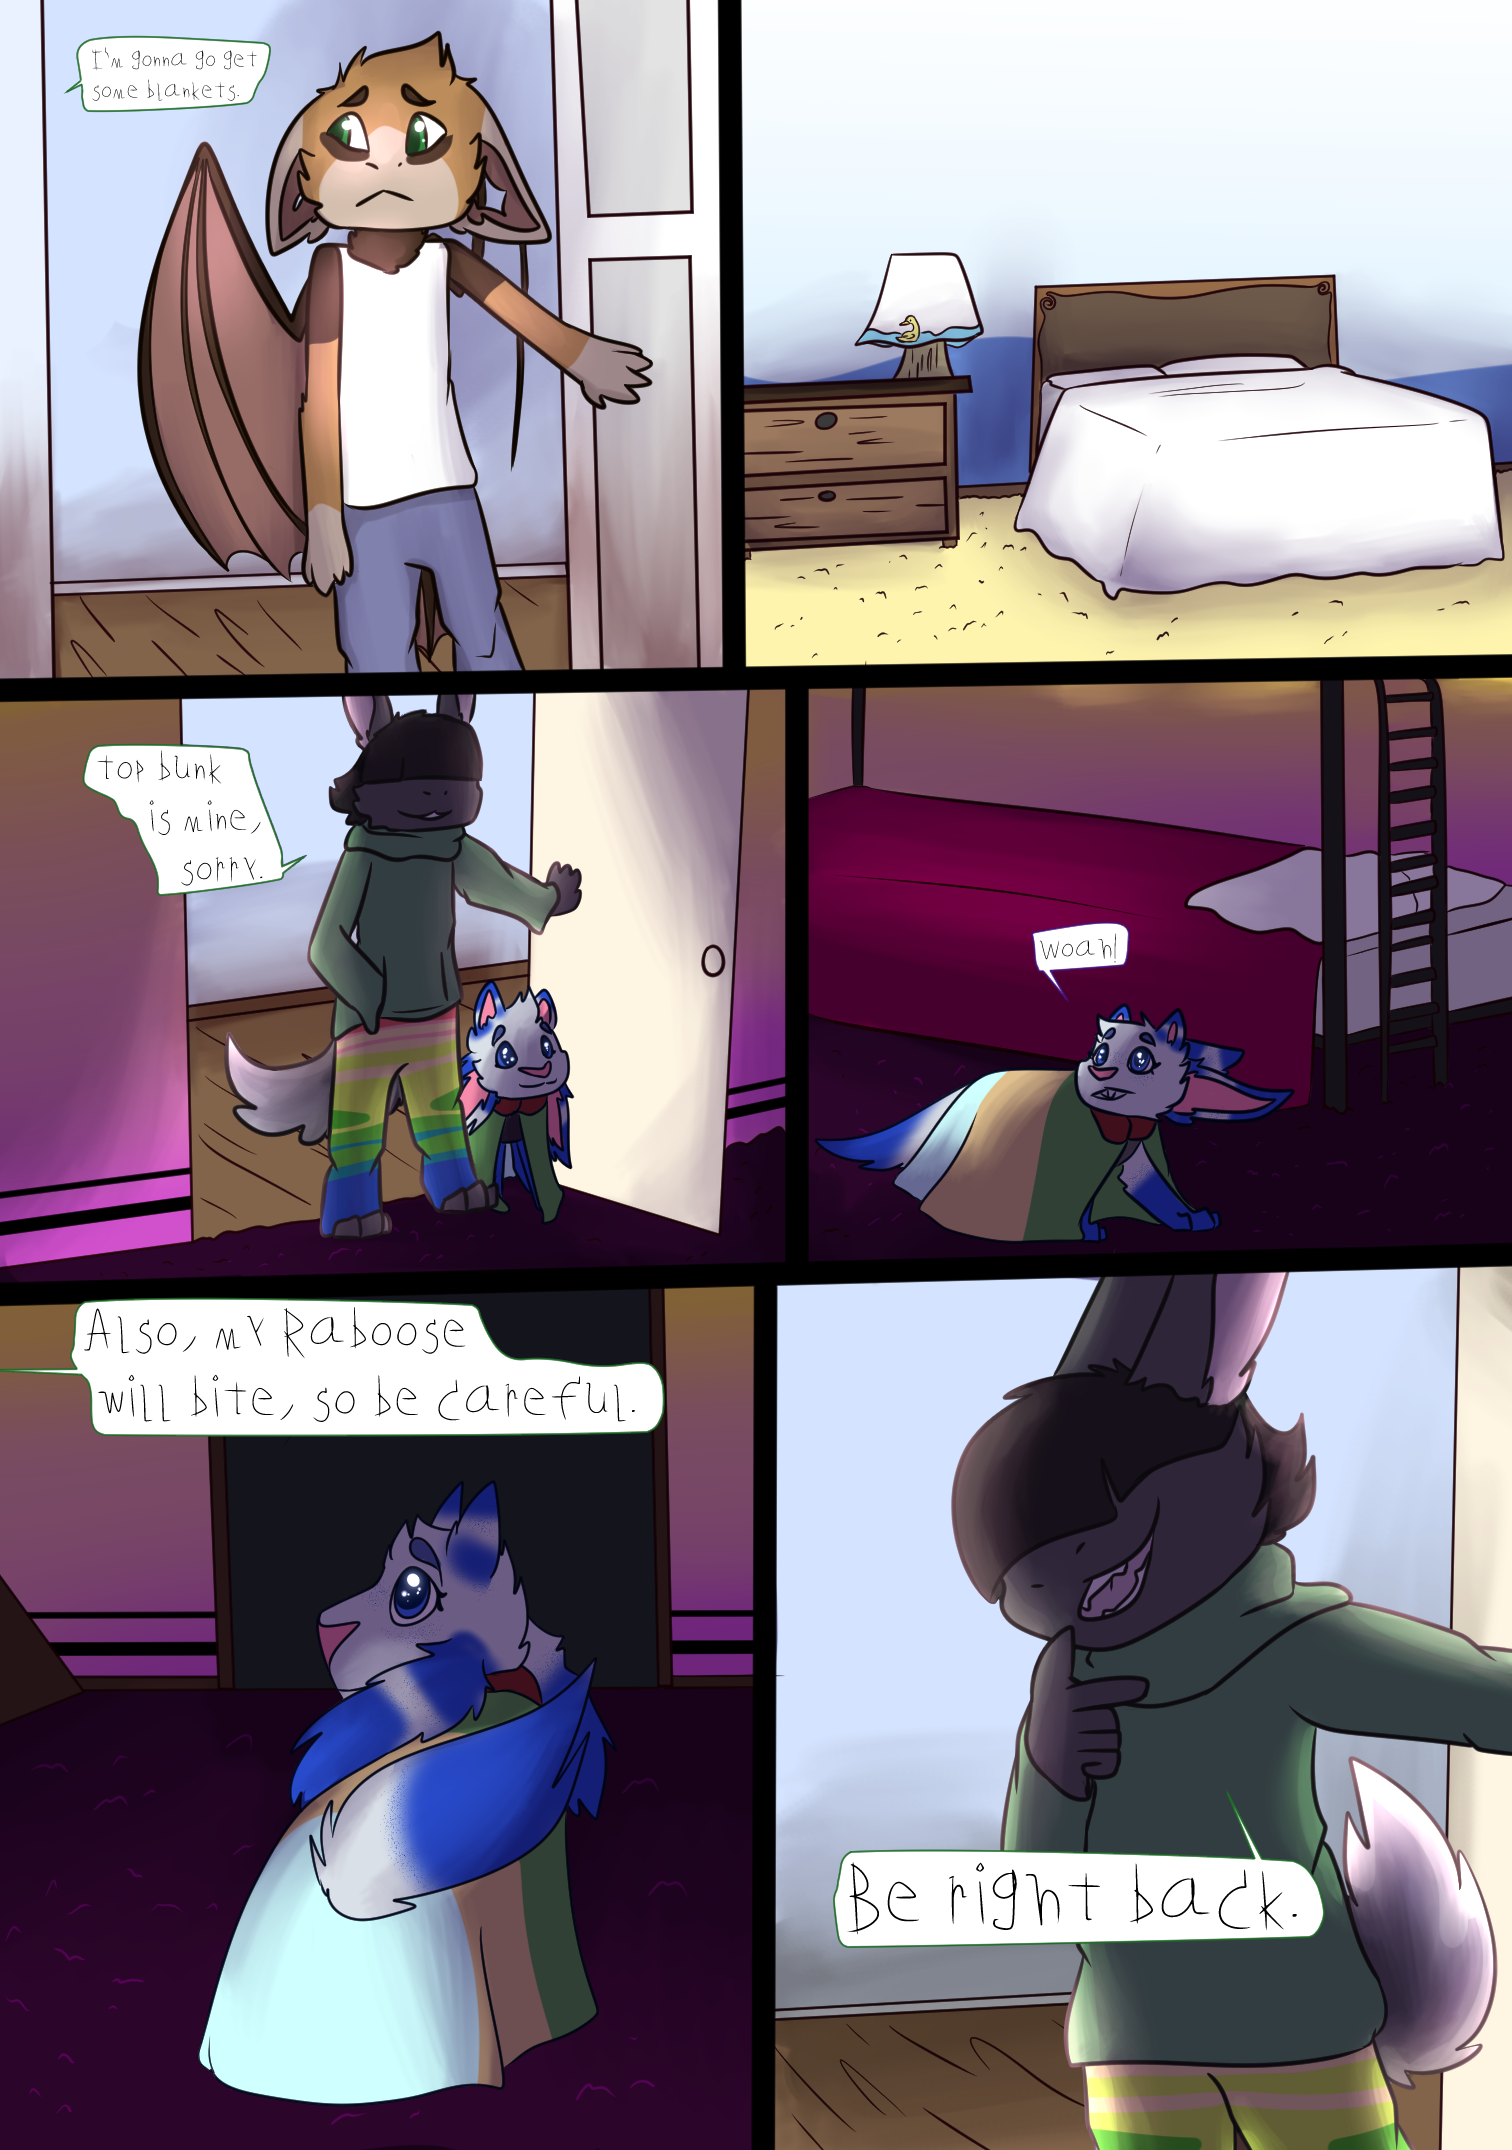 Page 6 - Top bunk